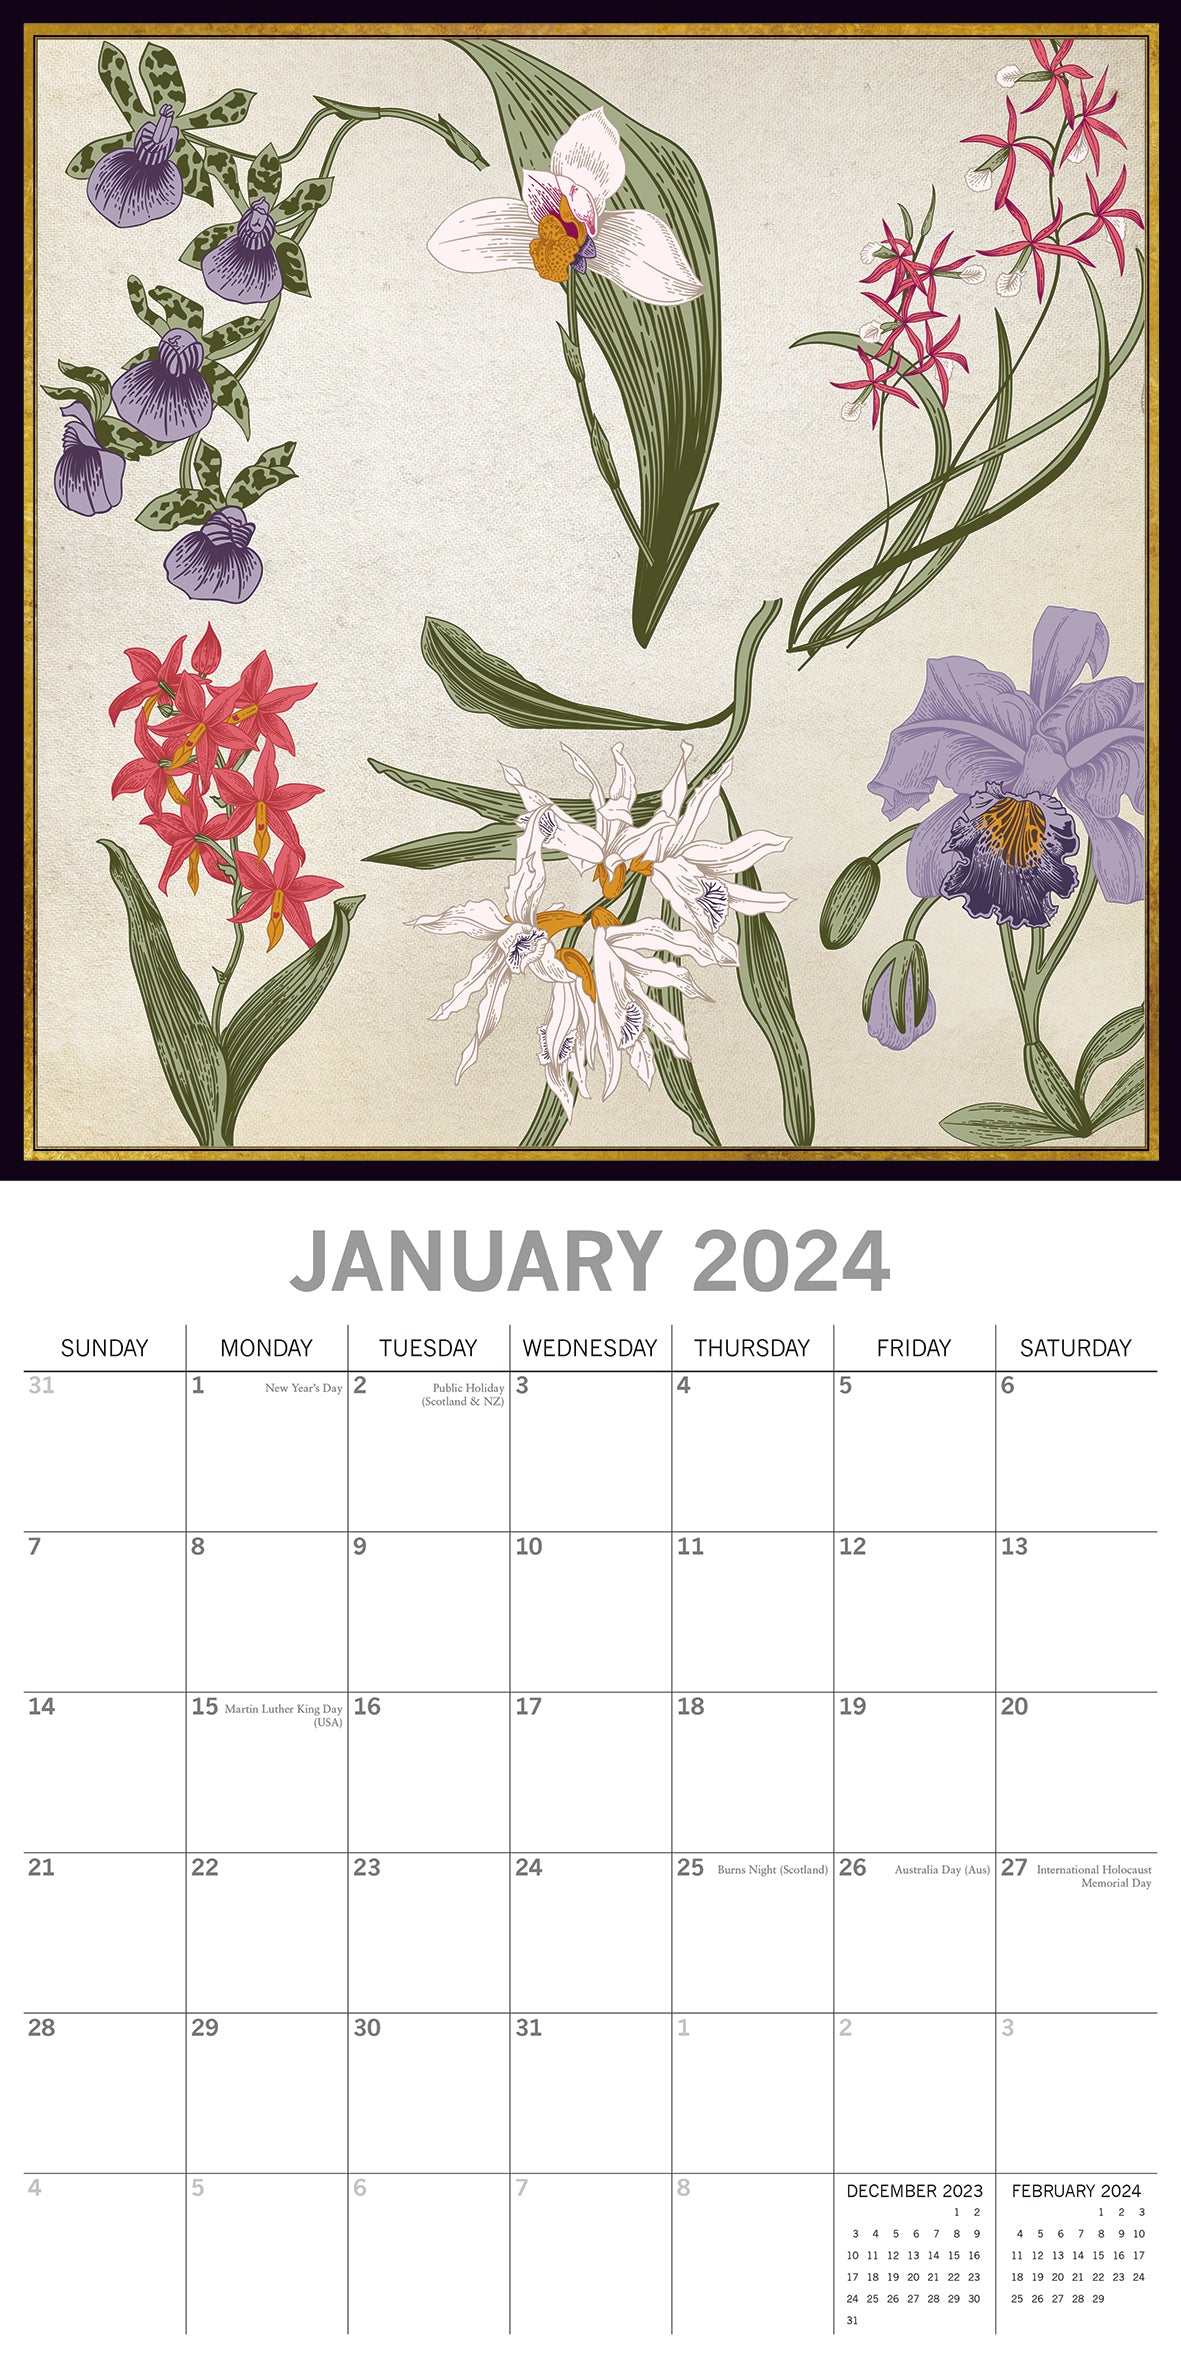 Botanicals 2024 square wall calendar